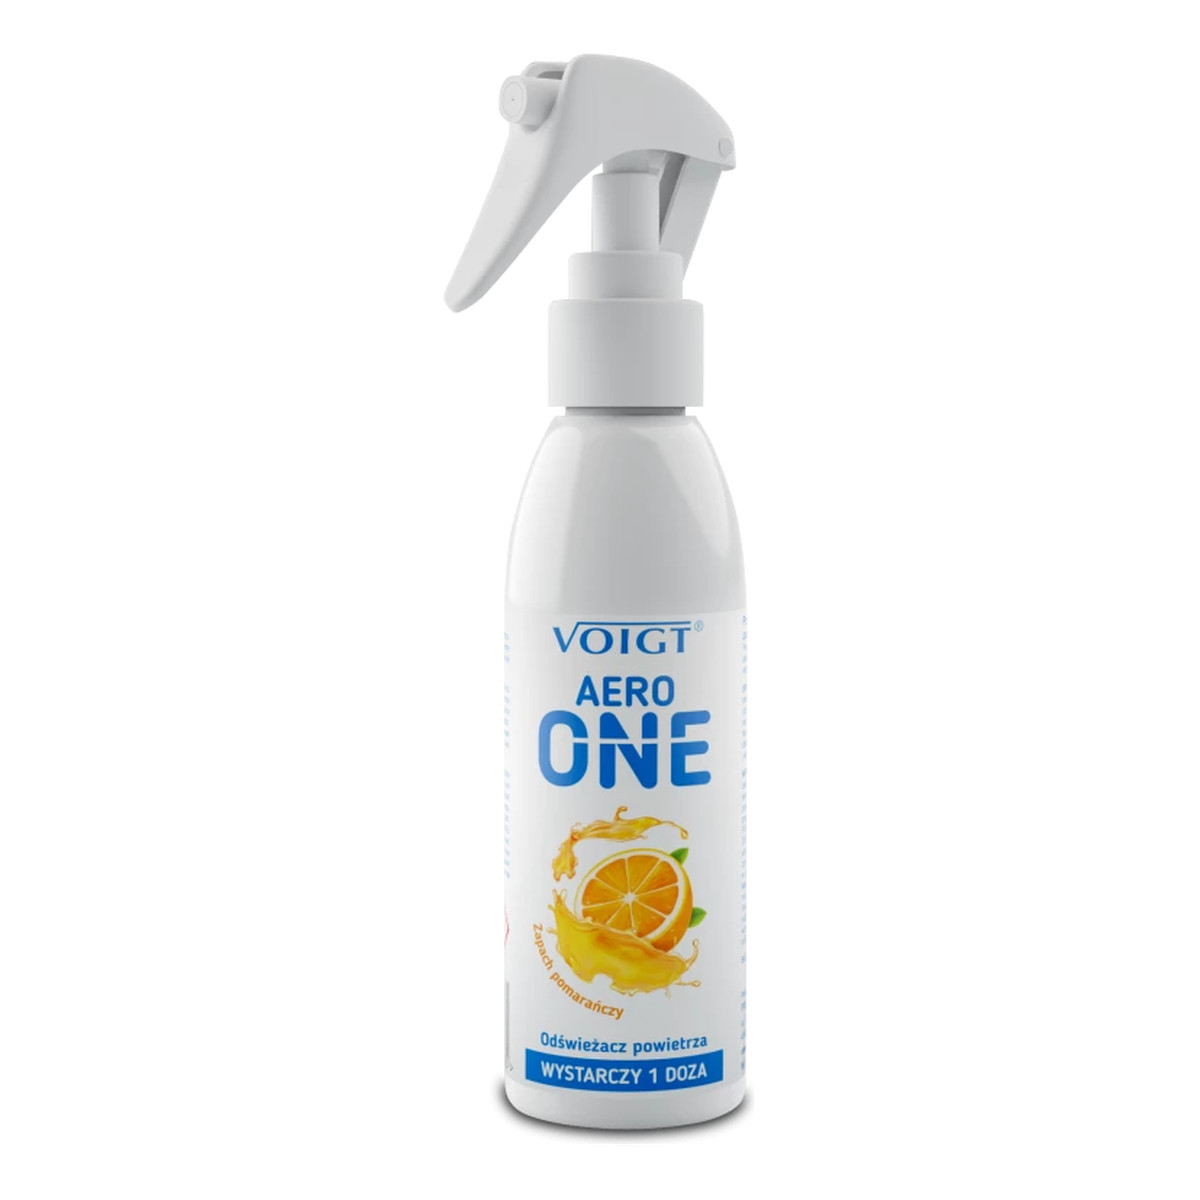 Voigt Aero One Odświeżacz powietrza- zapach pomarańczy 150ml